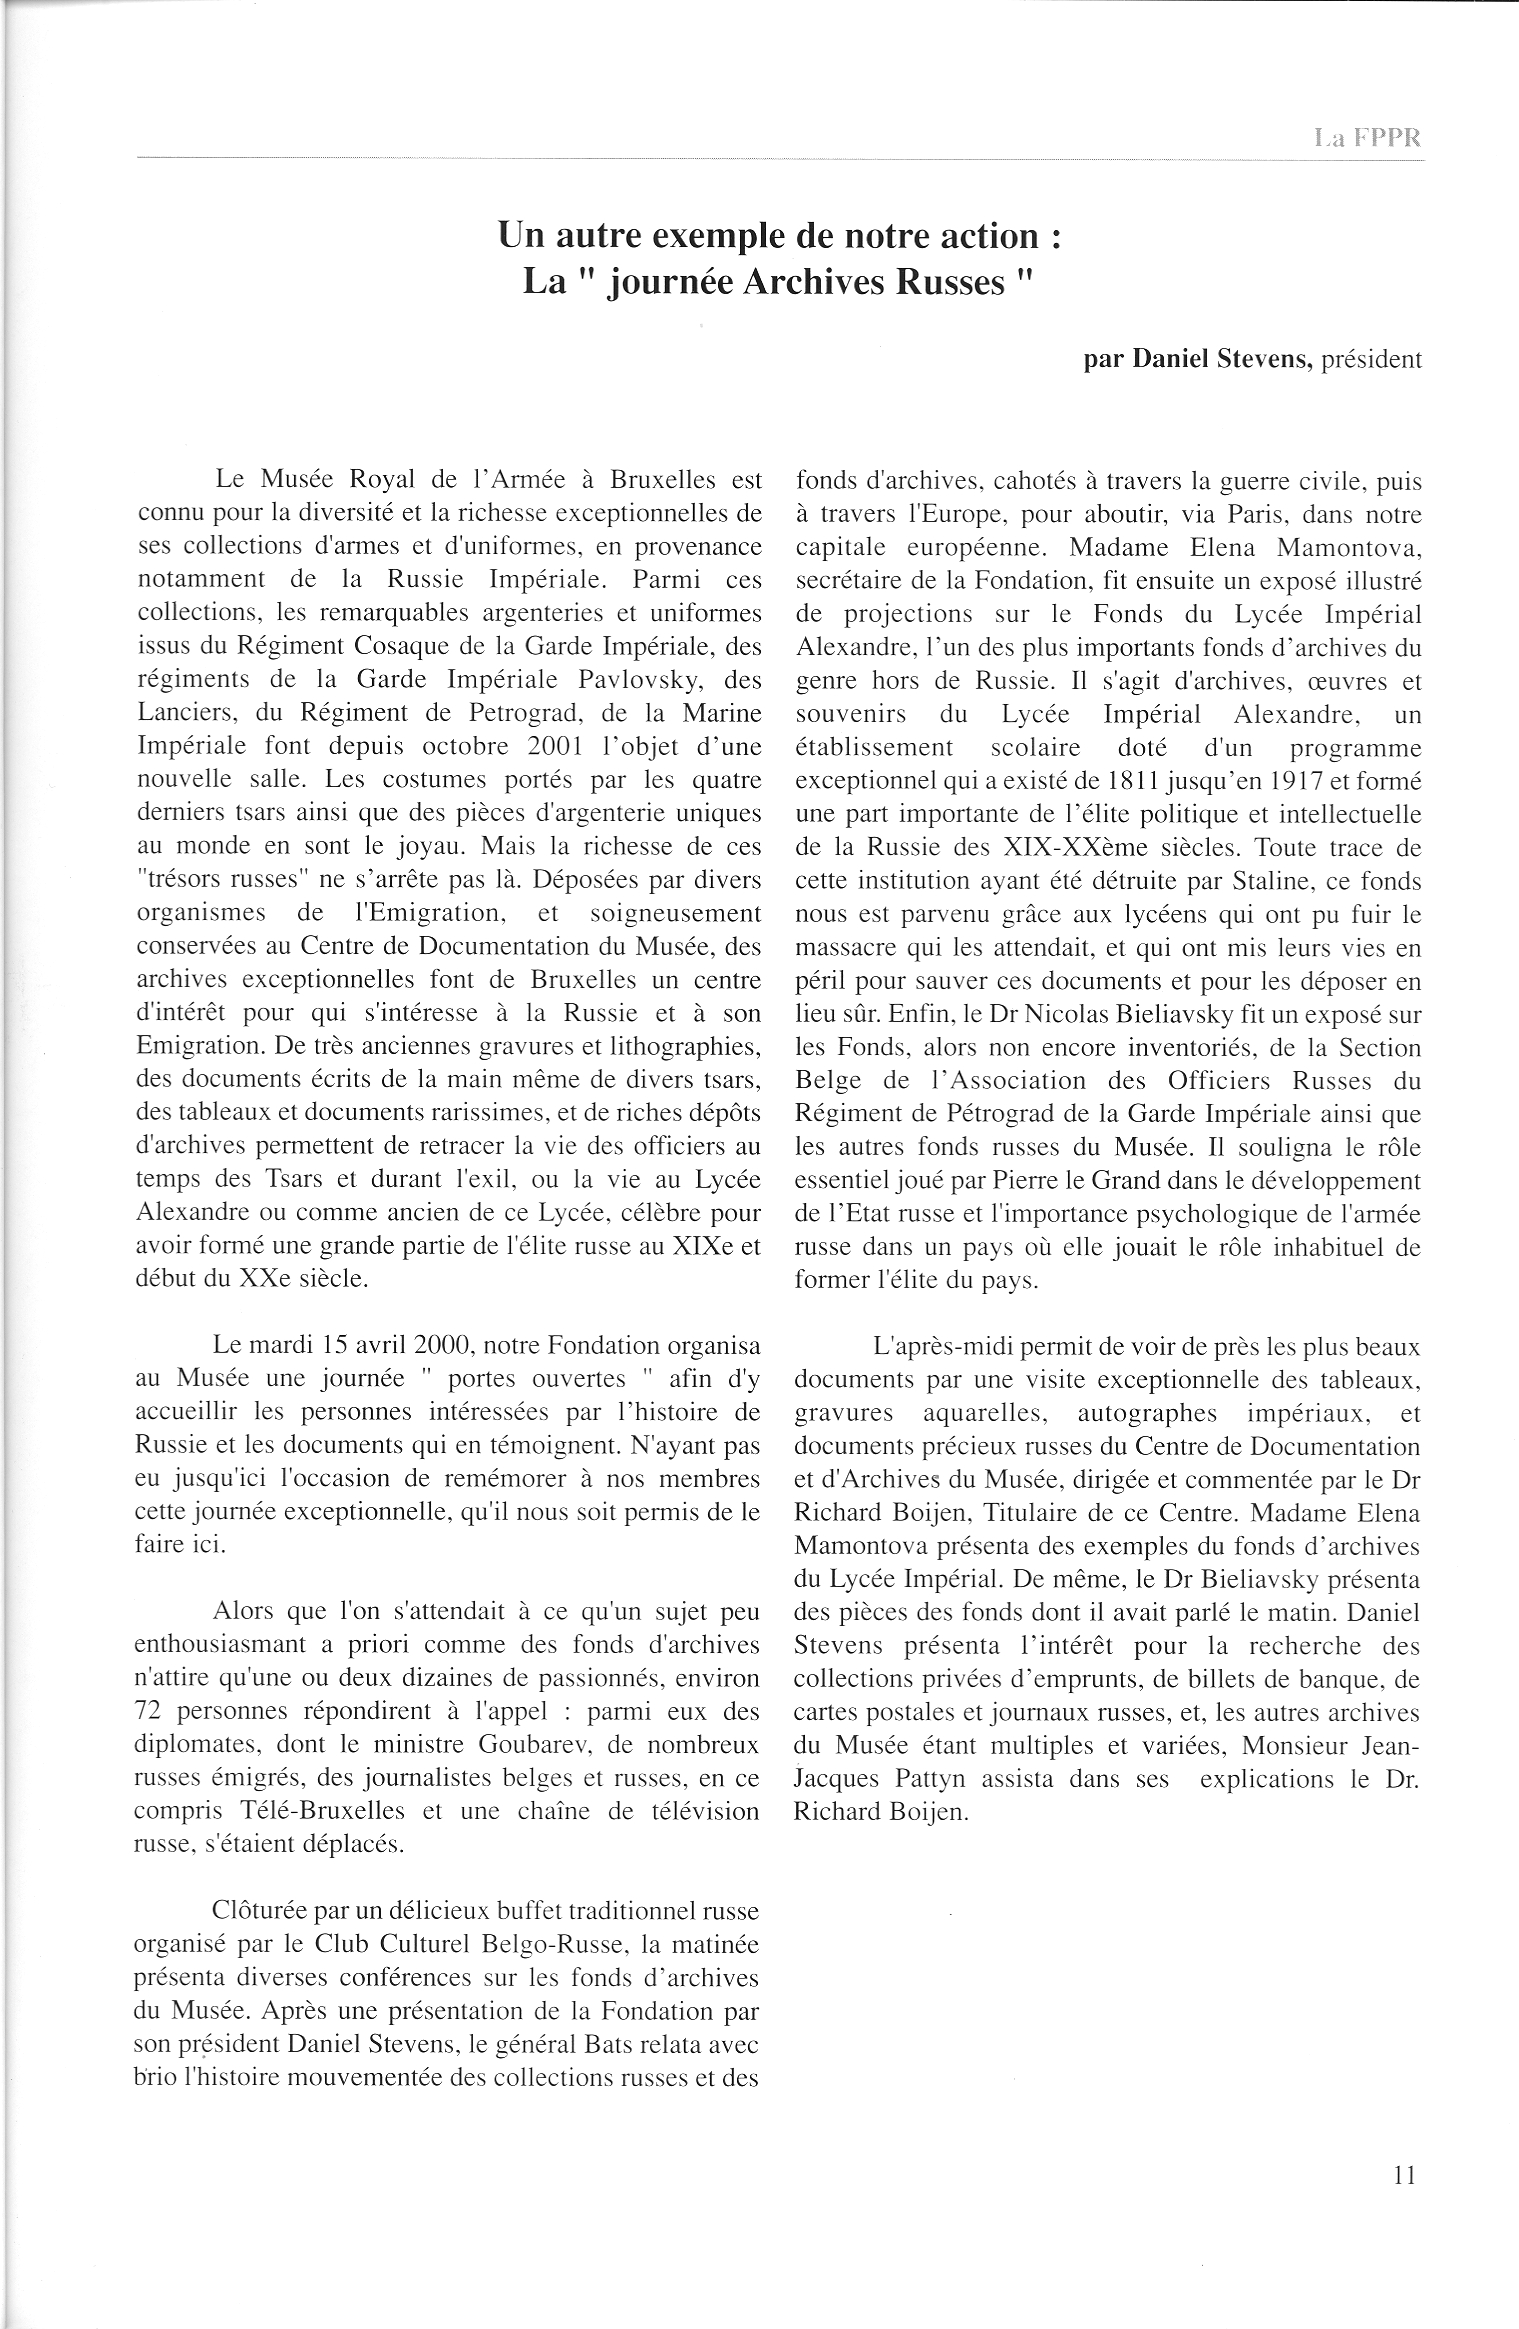 FPPR Revue 01 2002 13. Page 11. Un autre exemple de notre action. La « Journée Archives Russes » par Daniel Stevens